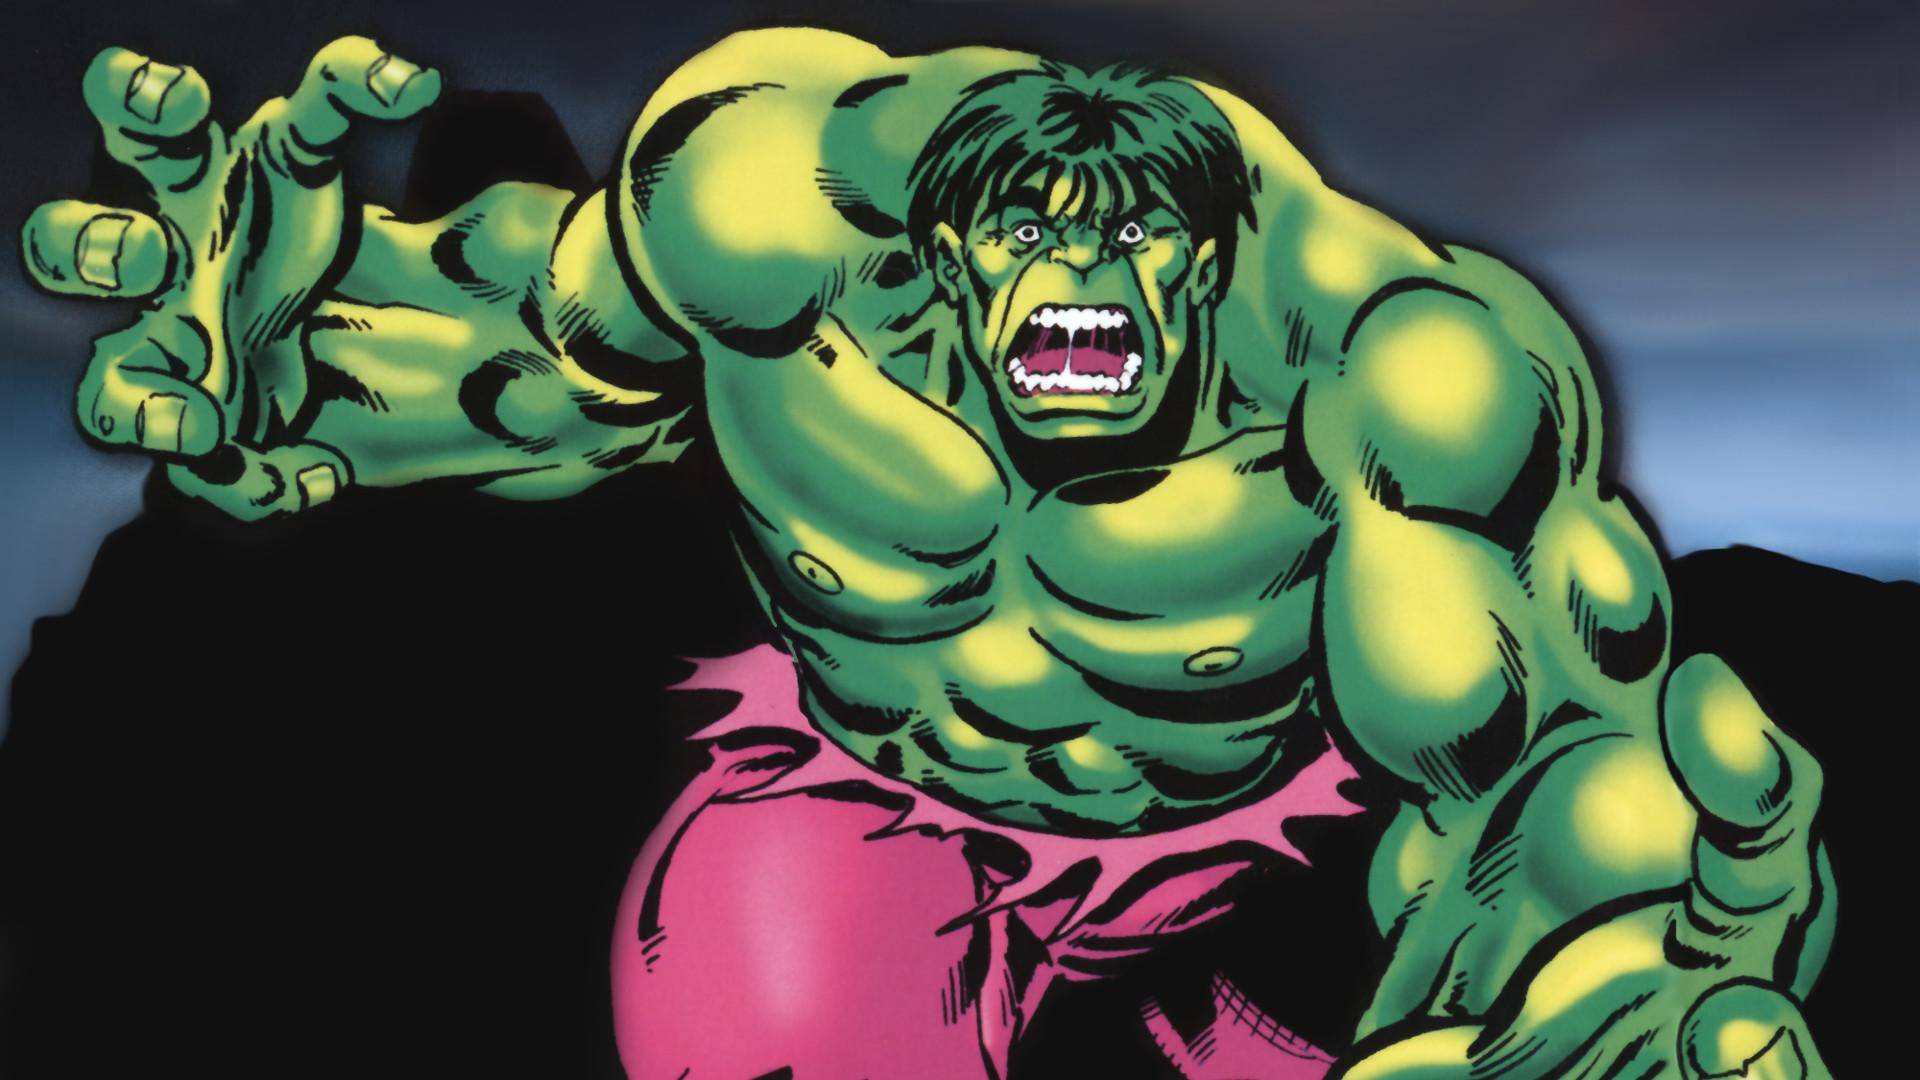 Hulk (1996)